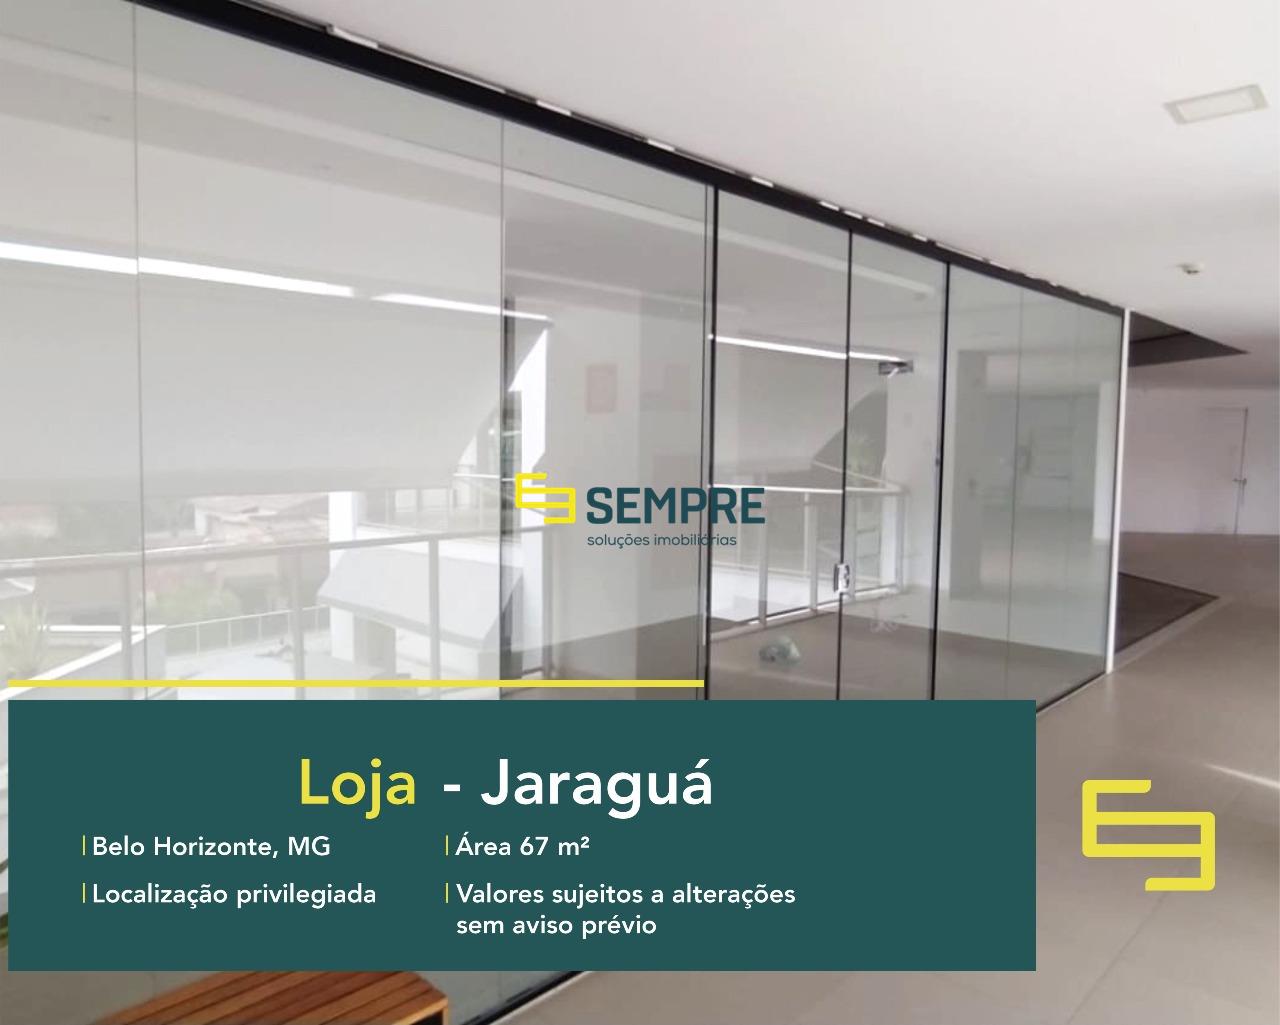 Loja no bairro Jaraguá para alugar em Belo Horizonte, excelente localização. O estabelecimento comercial conta com área de 67,94 m².